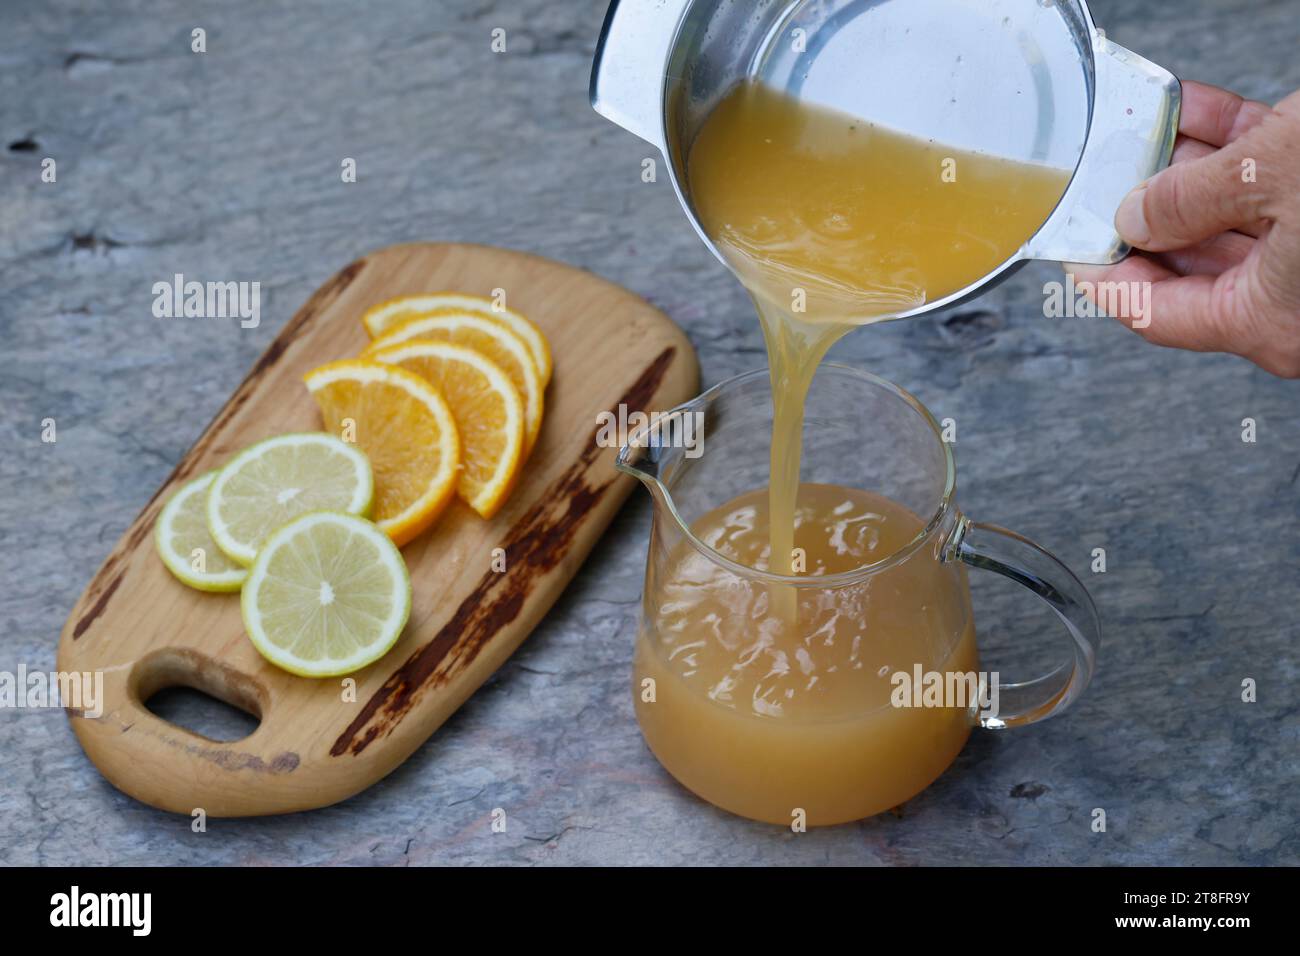 Eistee, EIS-Tee aus Kräutertee gemischt mit Apfelsafe, Saft von Orange, Saft von Zitrone, Iced Tea, Ice tea Schritt 3 : Saft einer frischen Orange und Banque D'Images